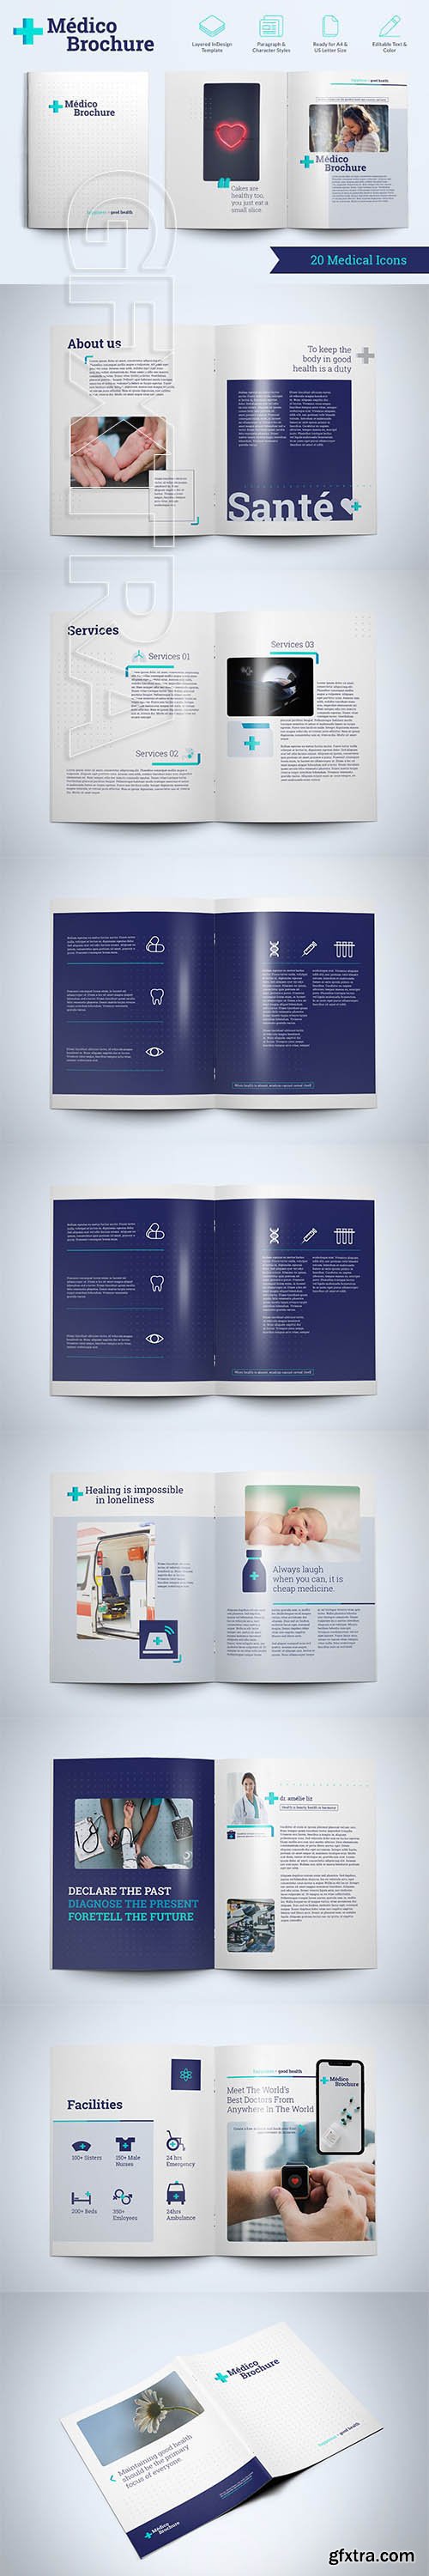 CreativeMarket - Medico Brochure Template 2903134